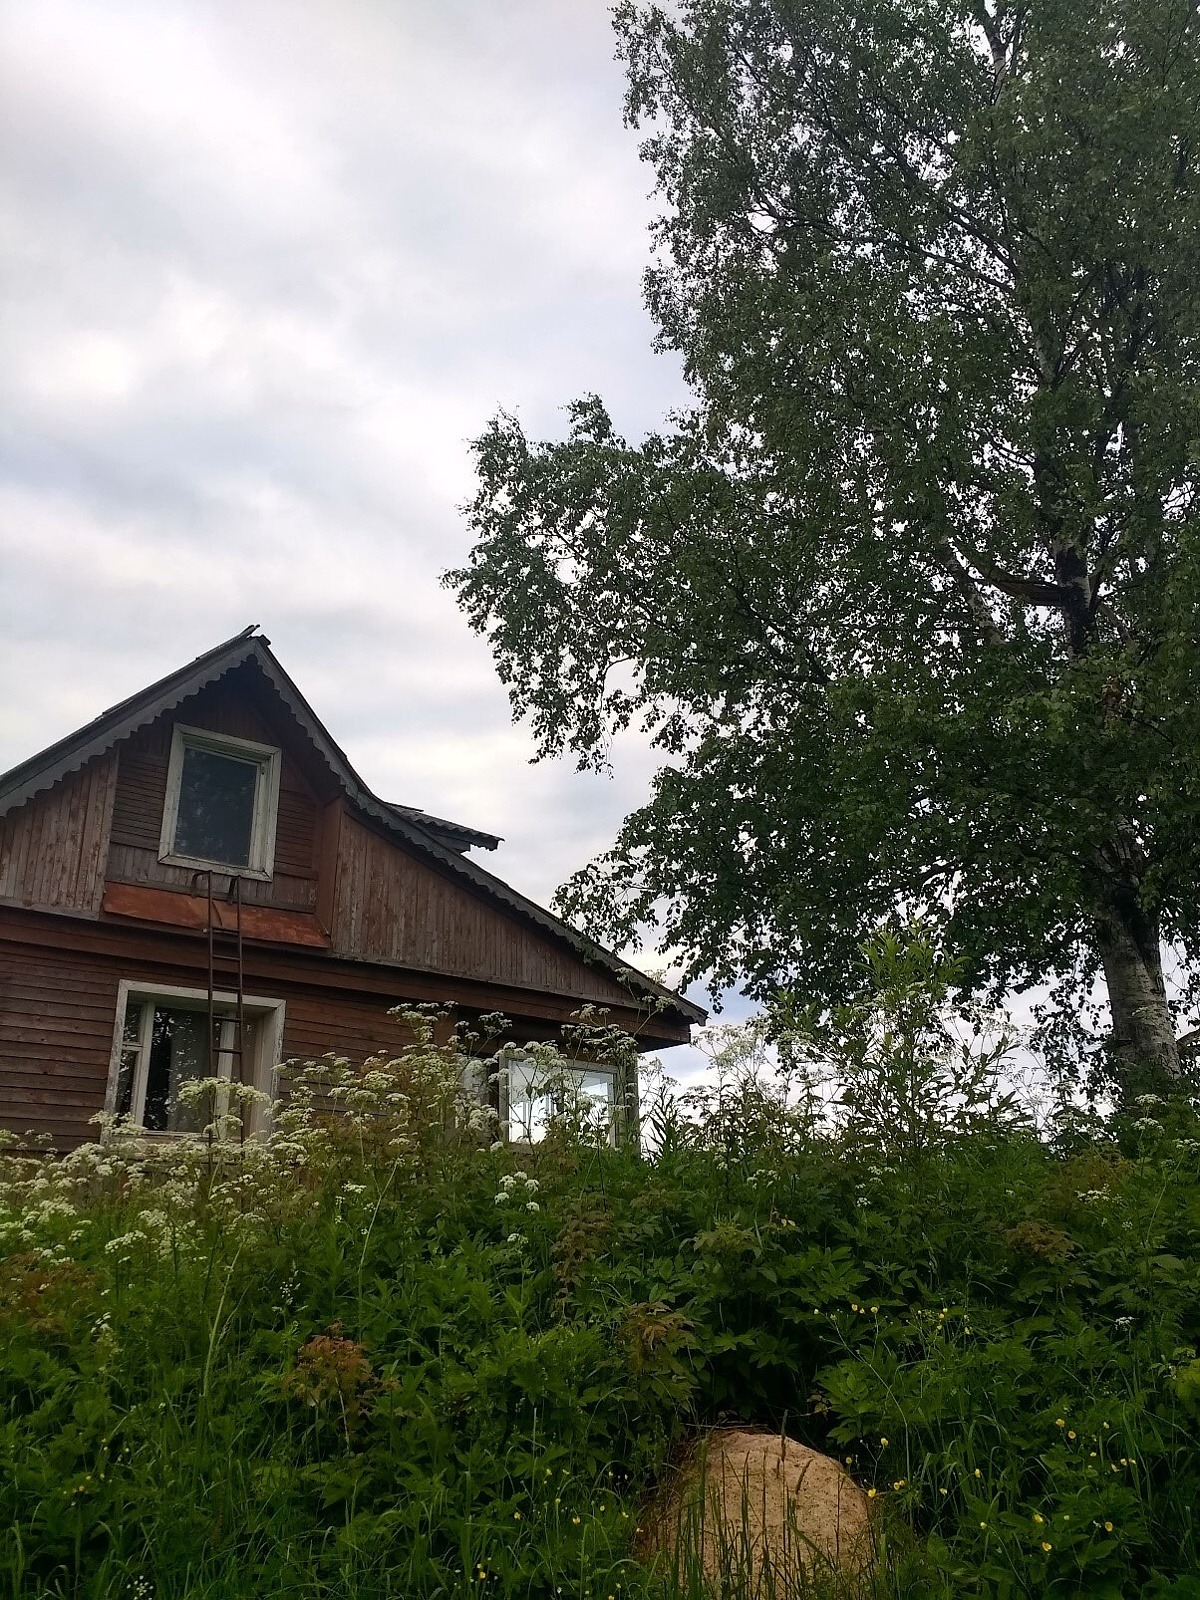 Aufnahme des Hauses der Gastfamilie mit einer großen Hecke und einem Baum